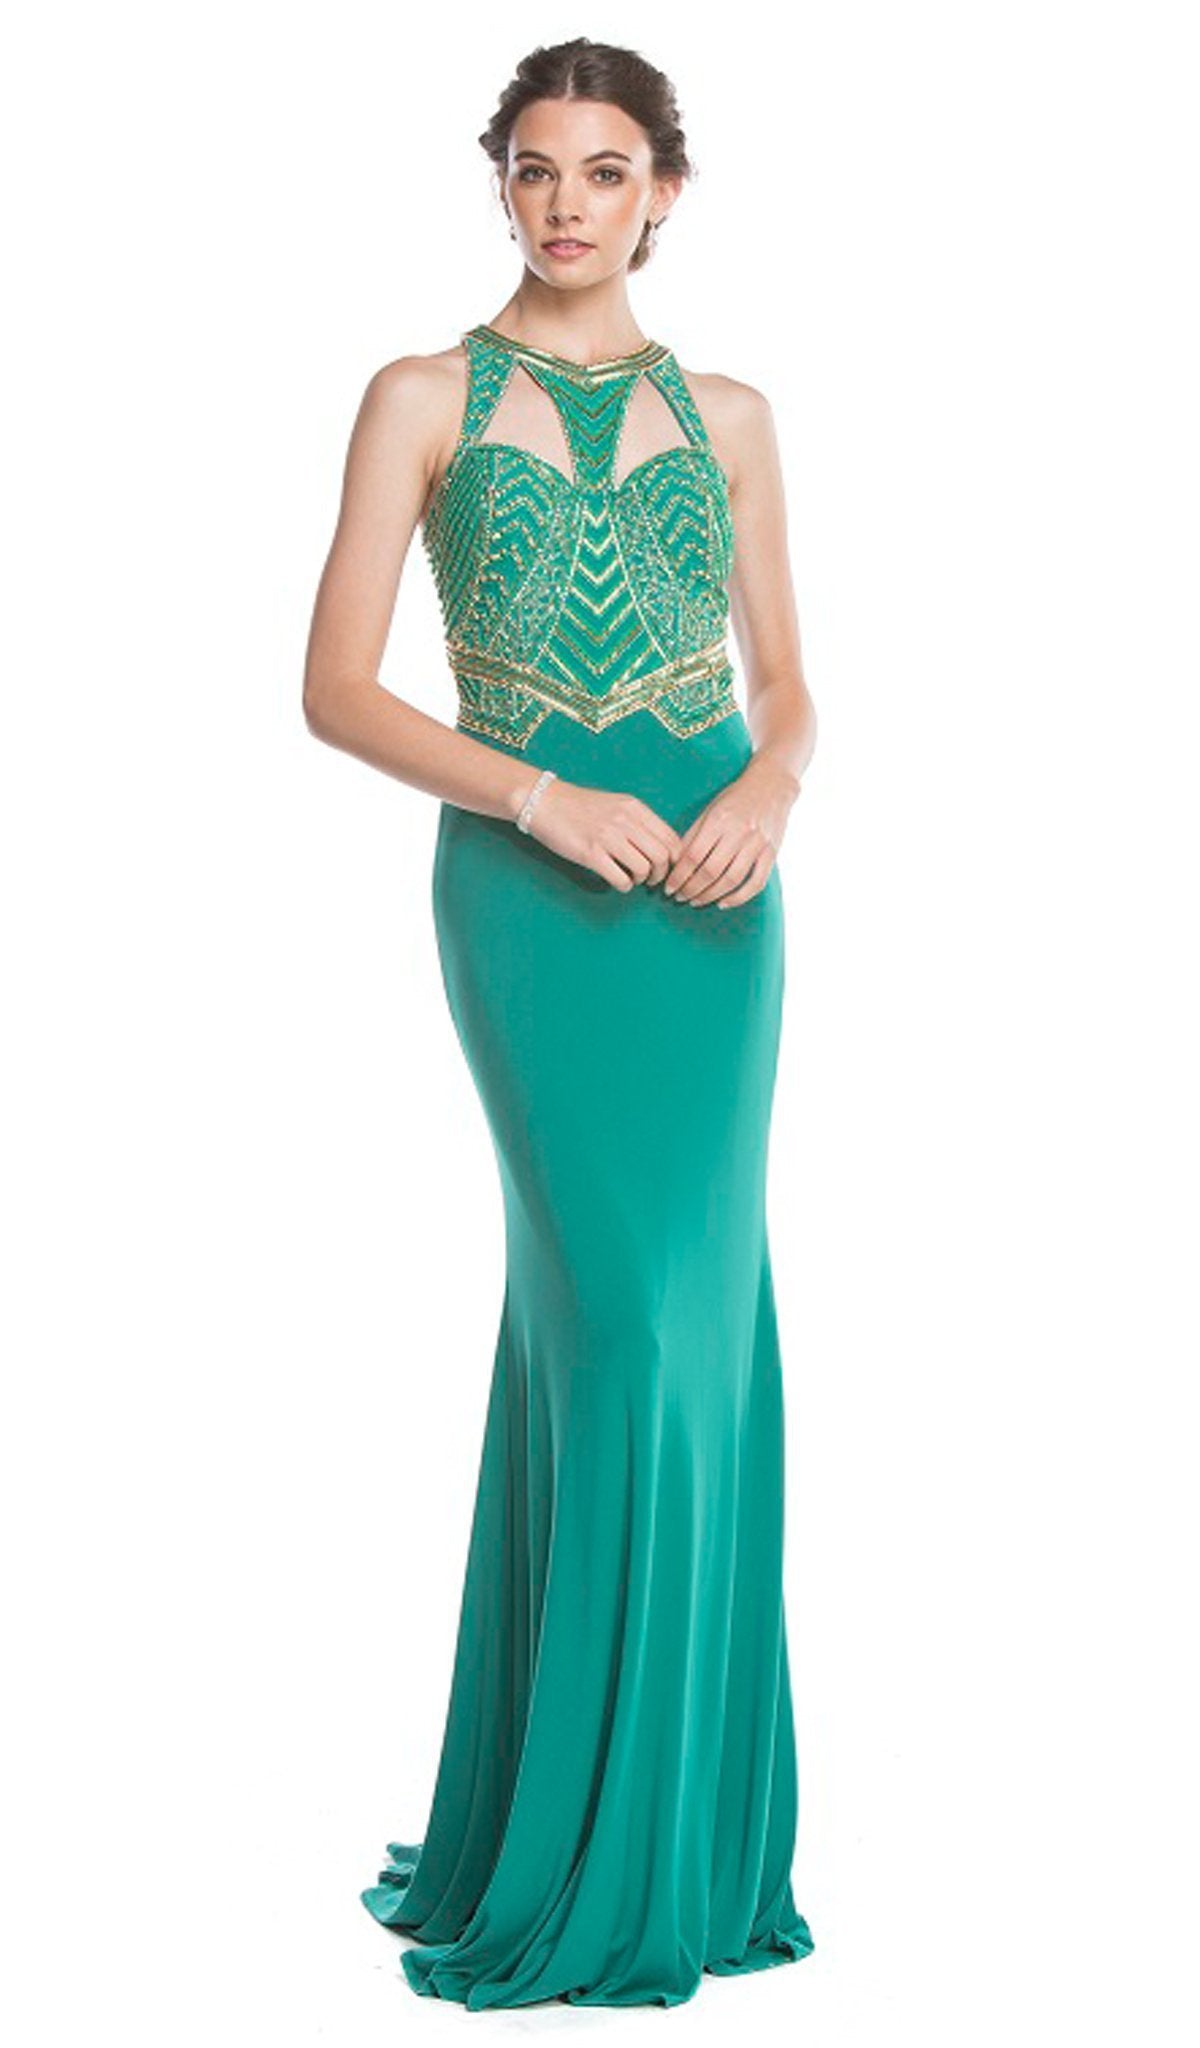 Aspeed Design - Elegant Embellished Halter Sheath Prom Dress
